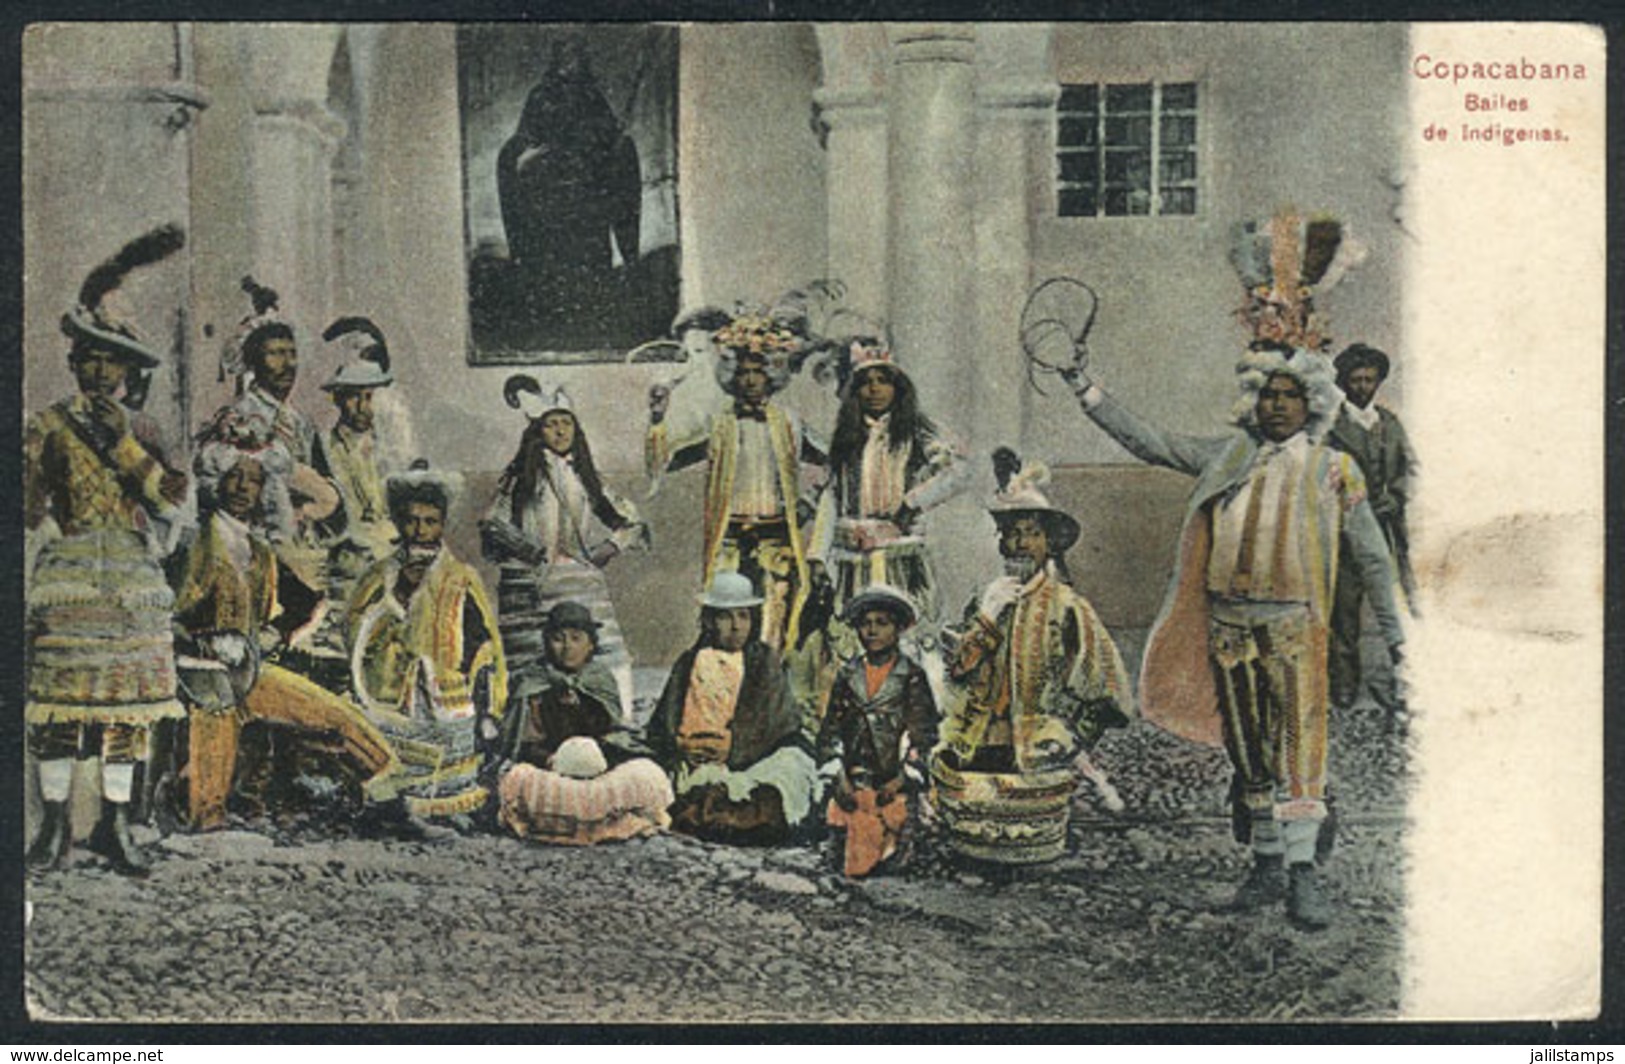 BOLIVIA: COPACABANA: Native Dances, Circa 1910, VF Quality! - Bolivie